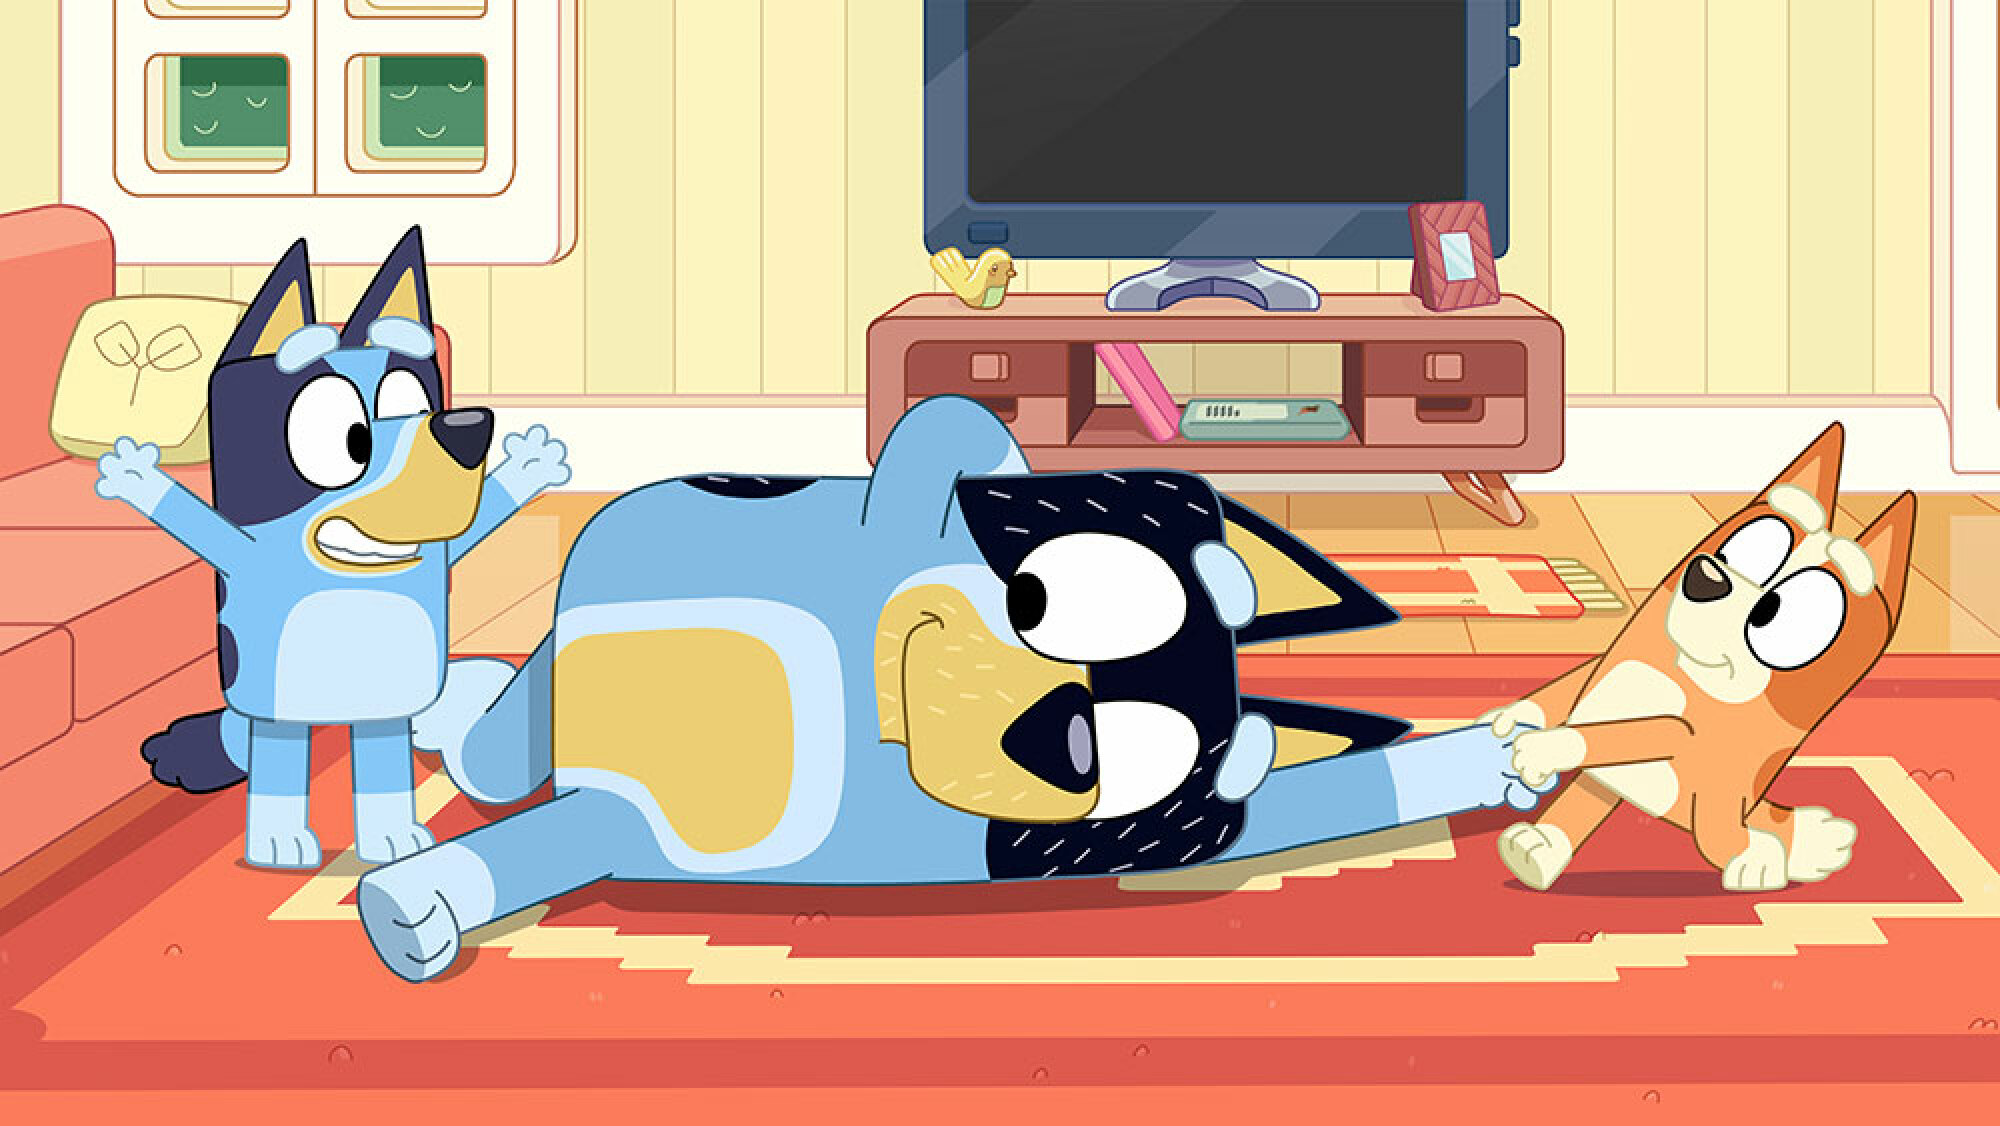 Un chien de dessin animé est allongé sur le tapis en souriant tandis que deux petits chiens jouent avec lui.